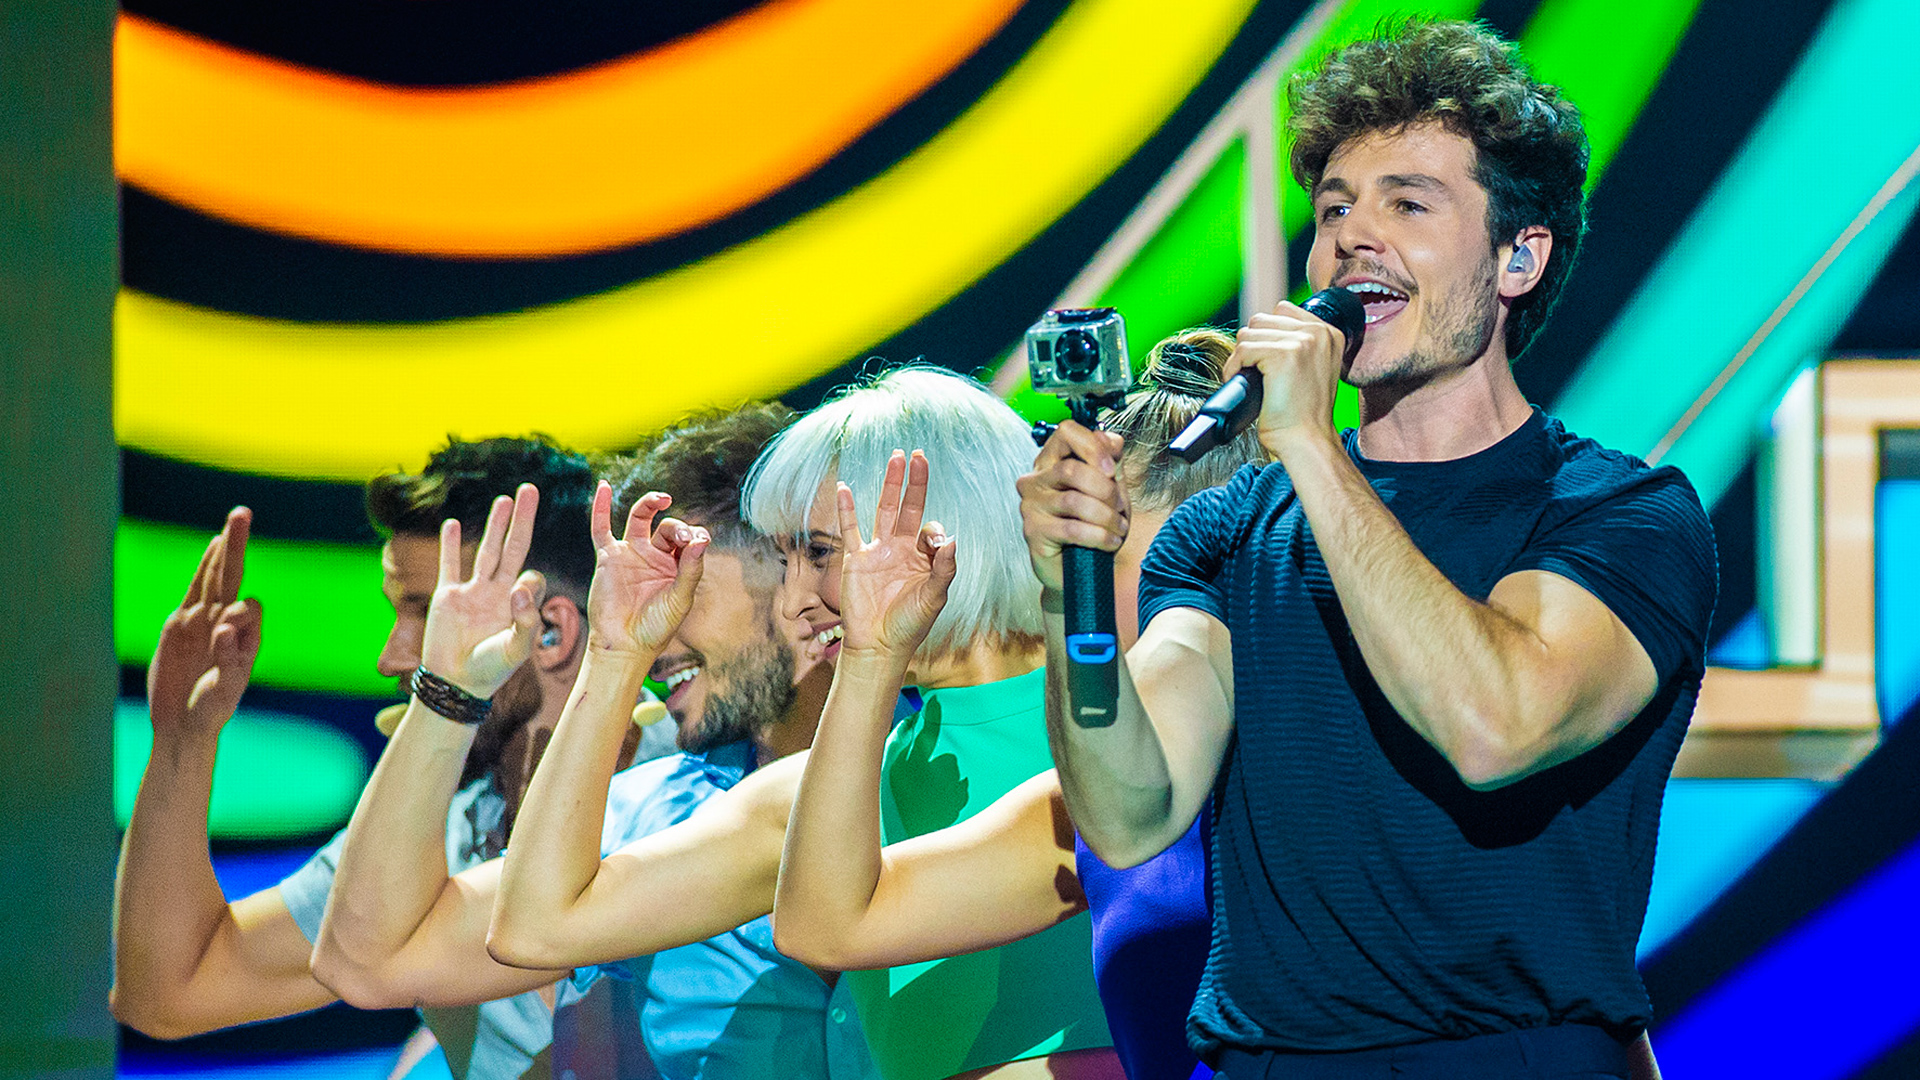 Miki sorprende en Eurovisión 2019 con los ensayos de 'La Venda'